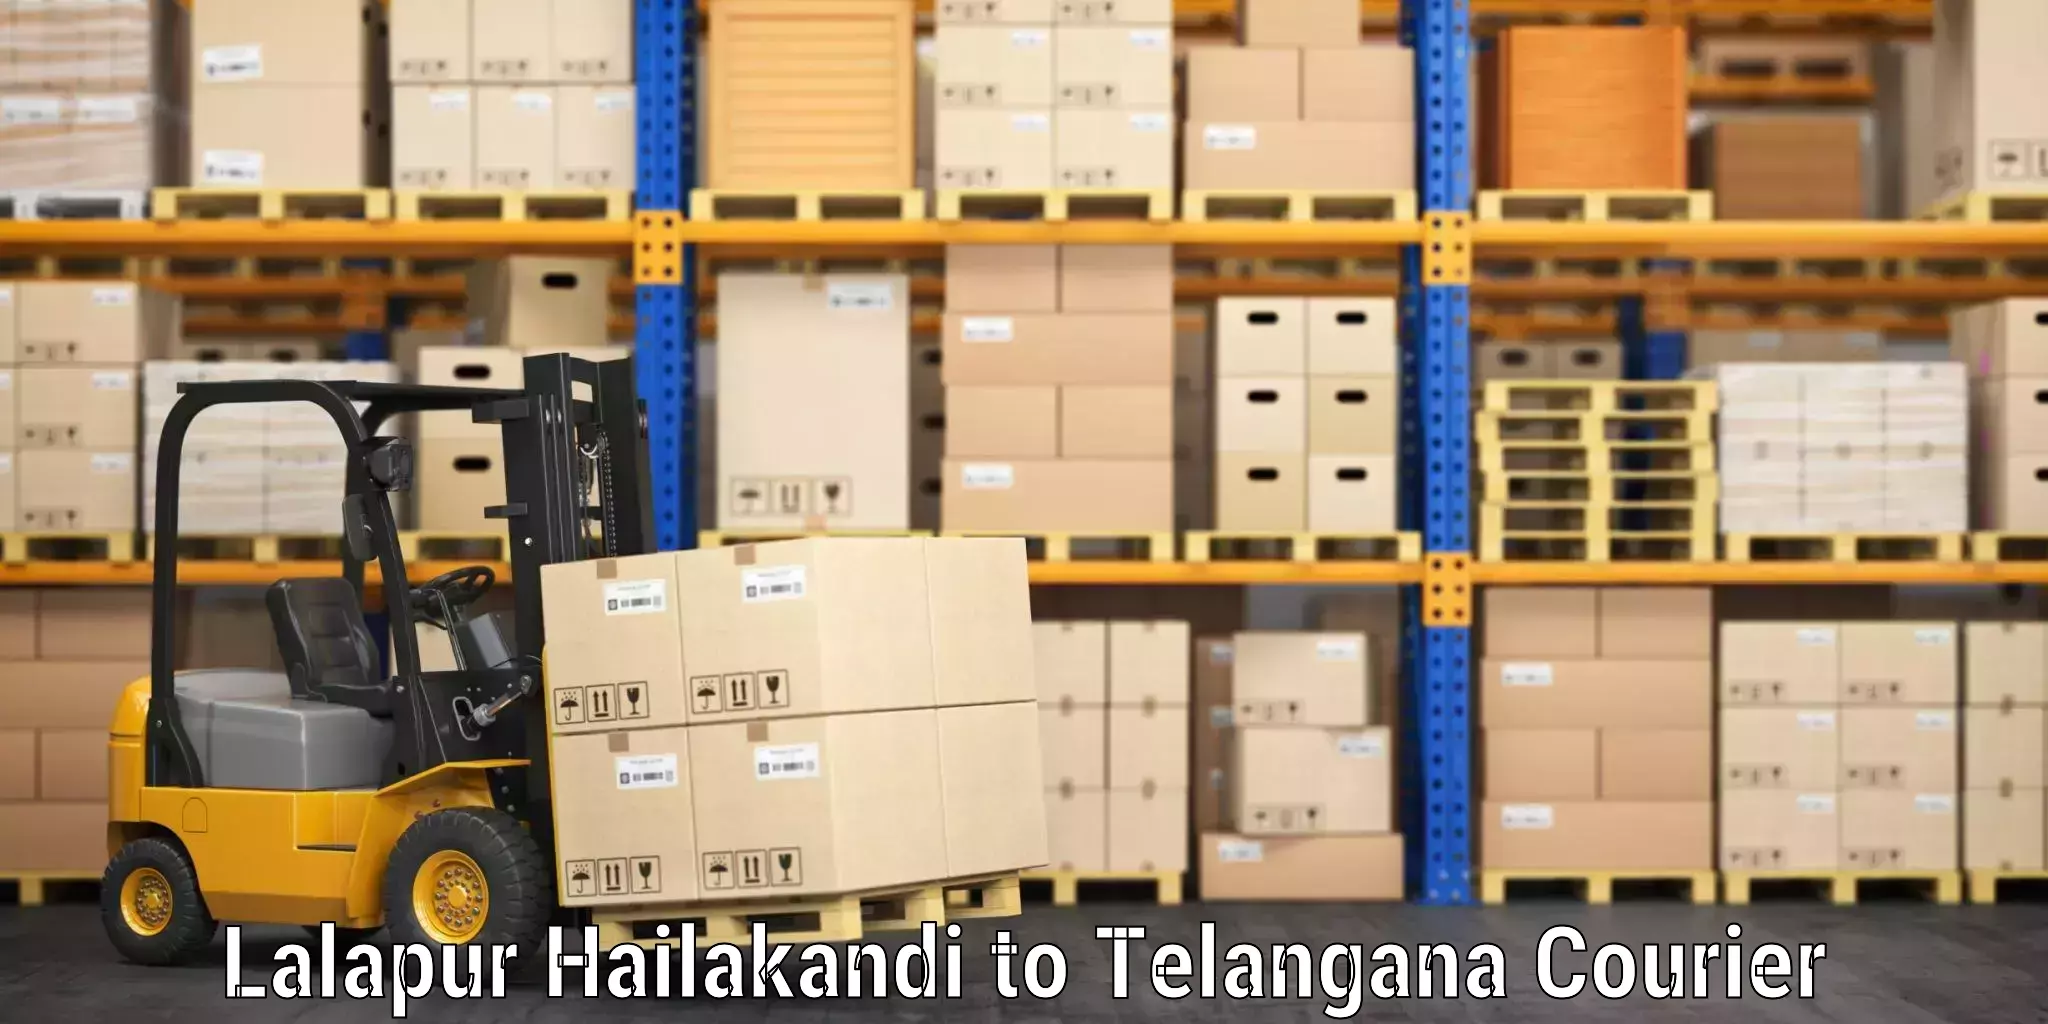 Luggage delivery estimate Lalapur Hailakandi to Mahabubnagar